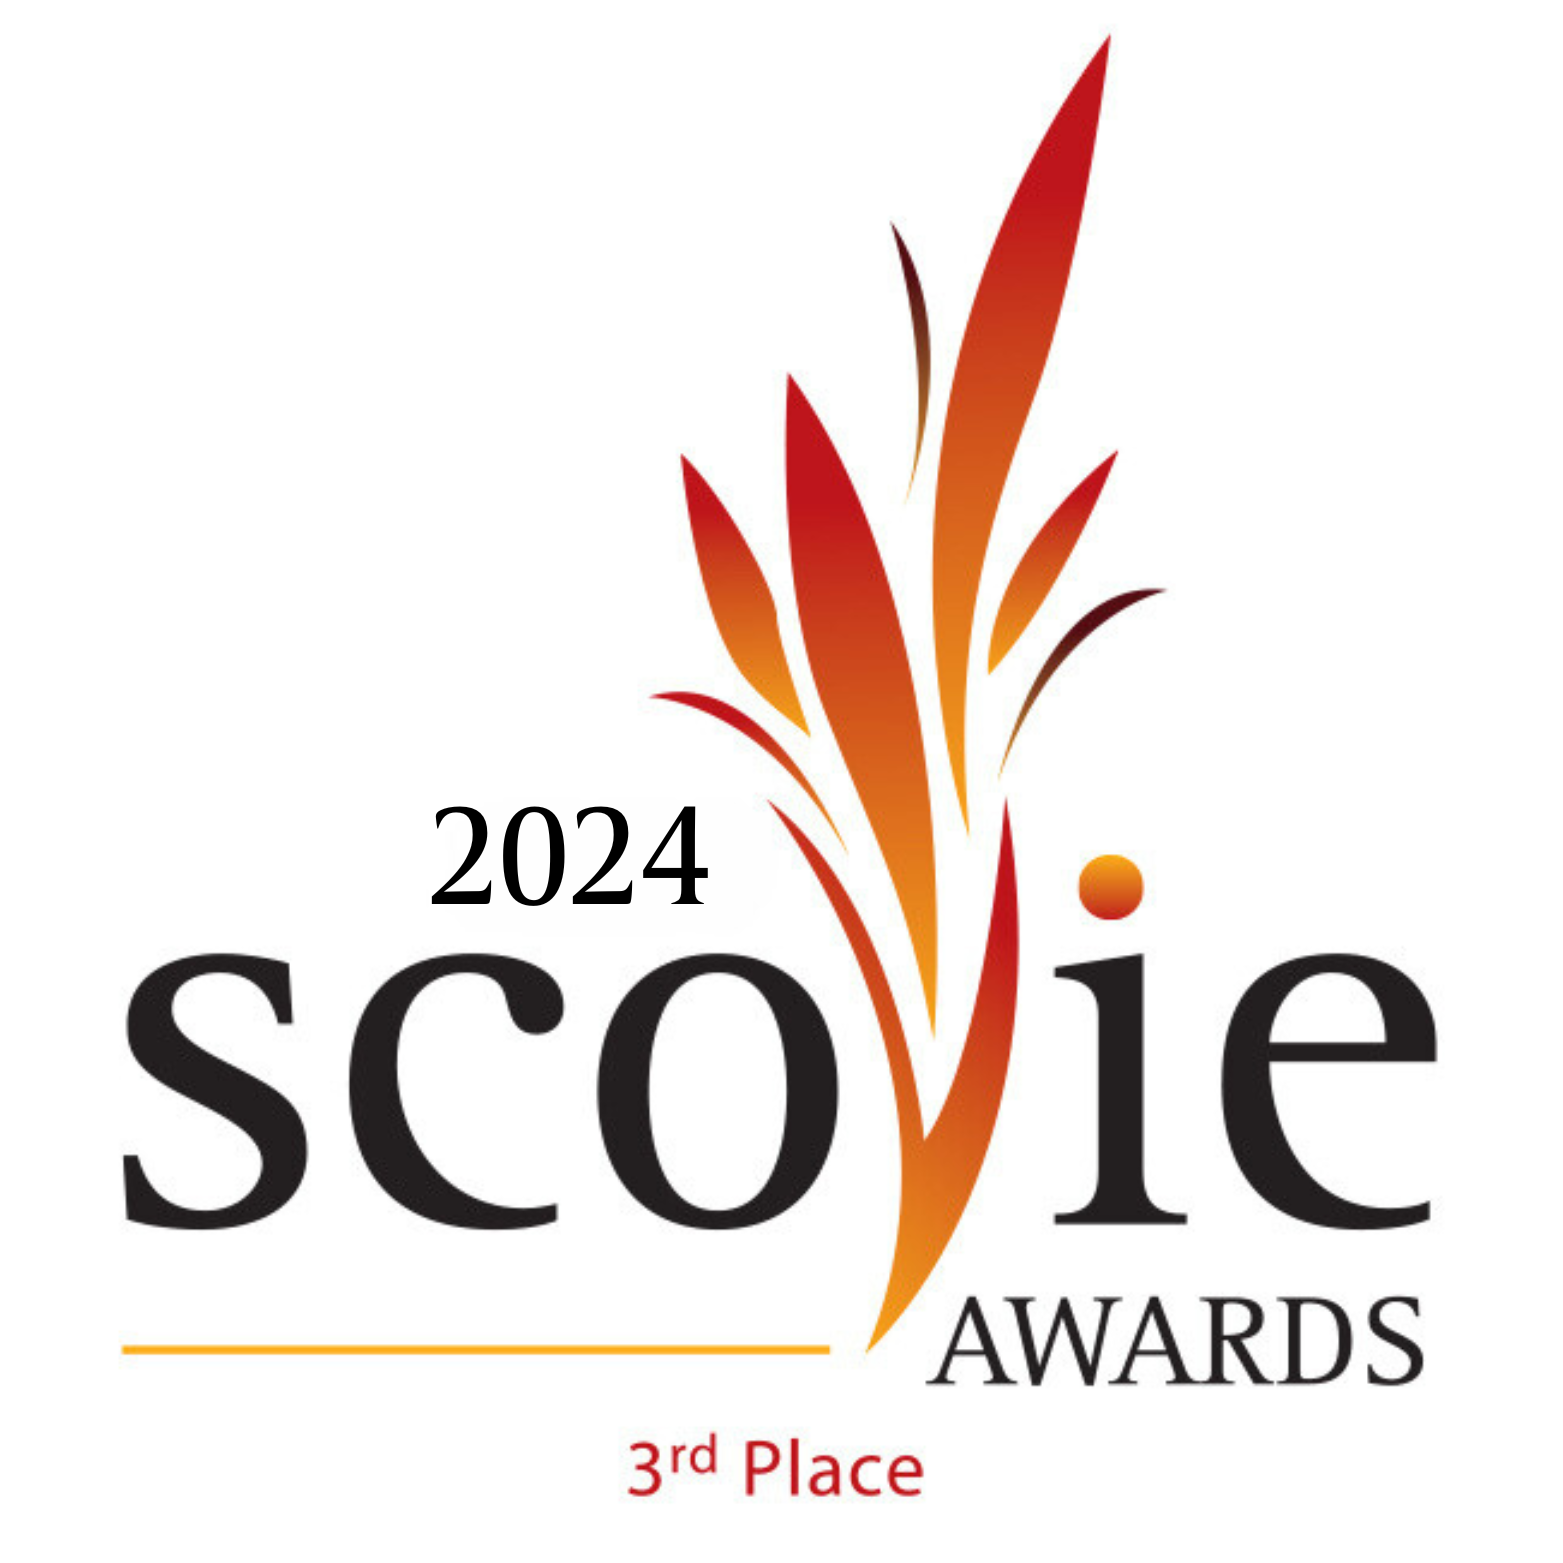 2024 Scovie Winners Logos Scovie Awards